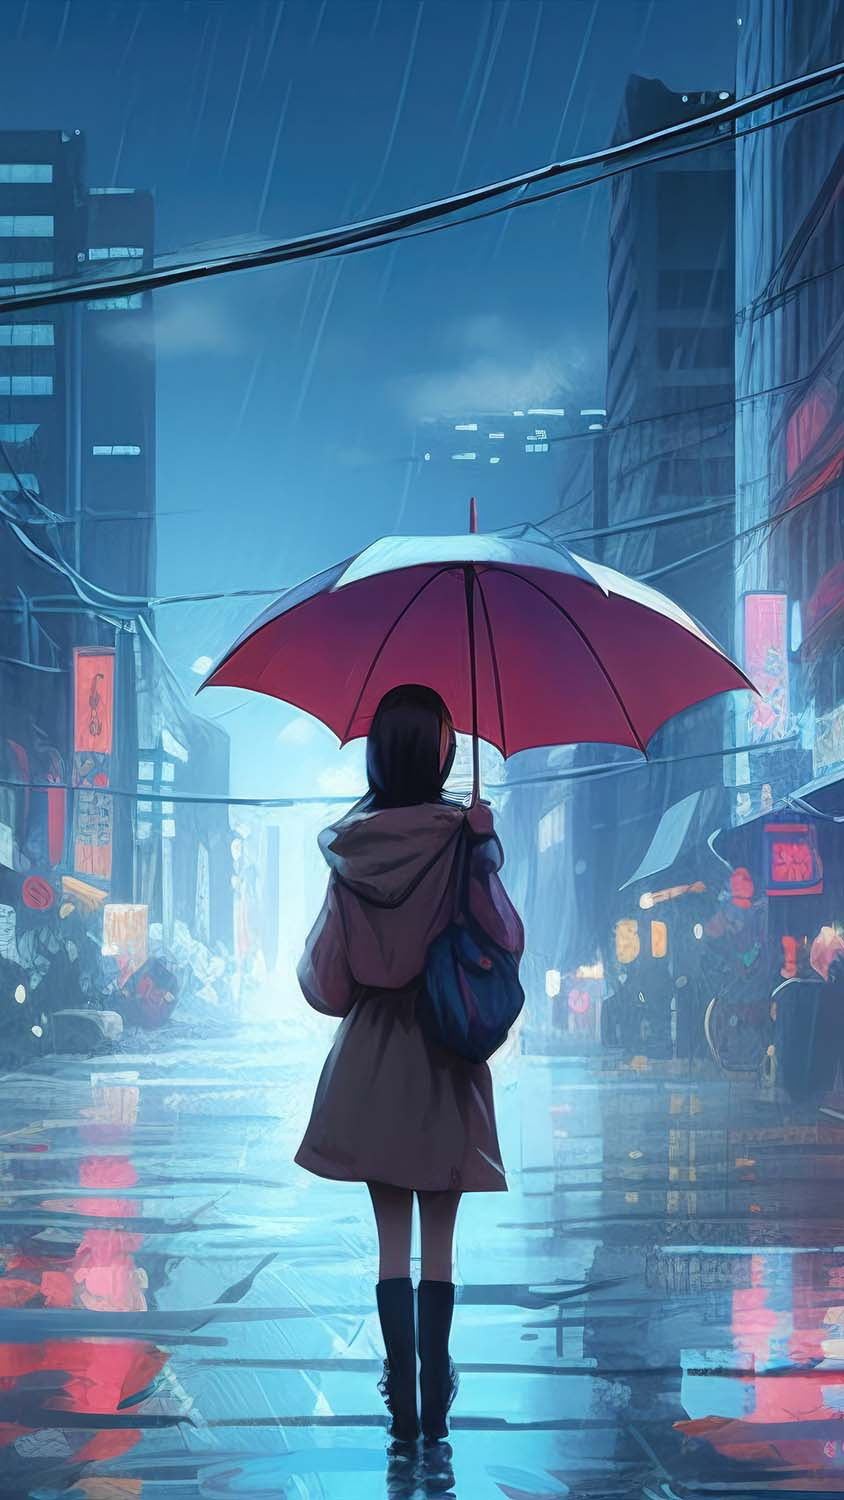 Anime Girl Walking In Rain Umbrella